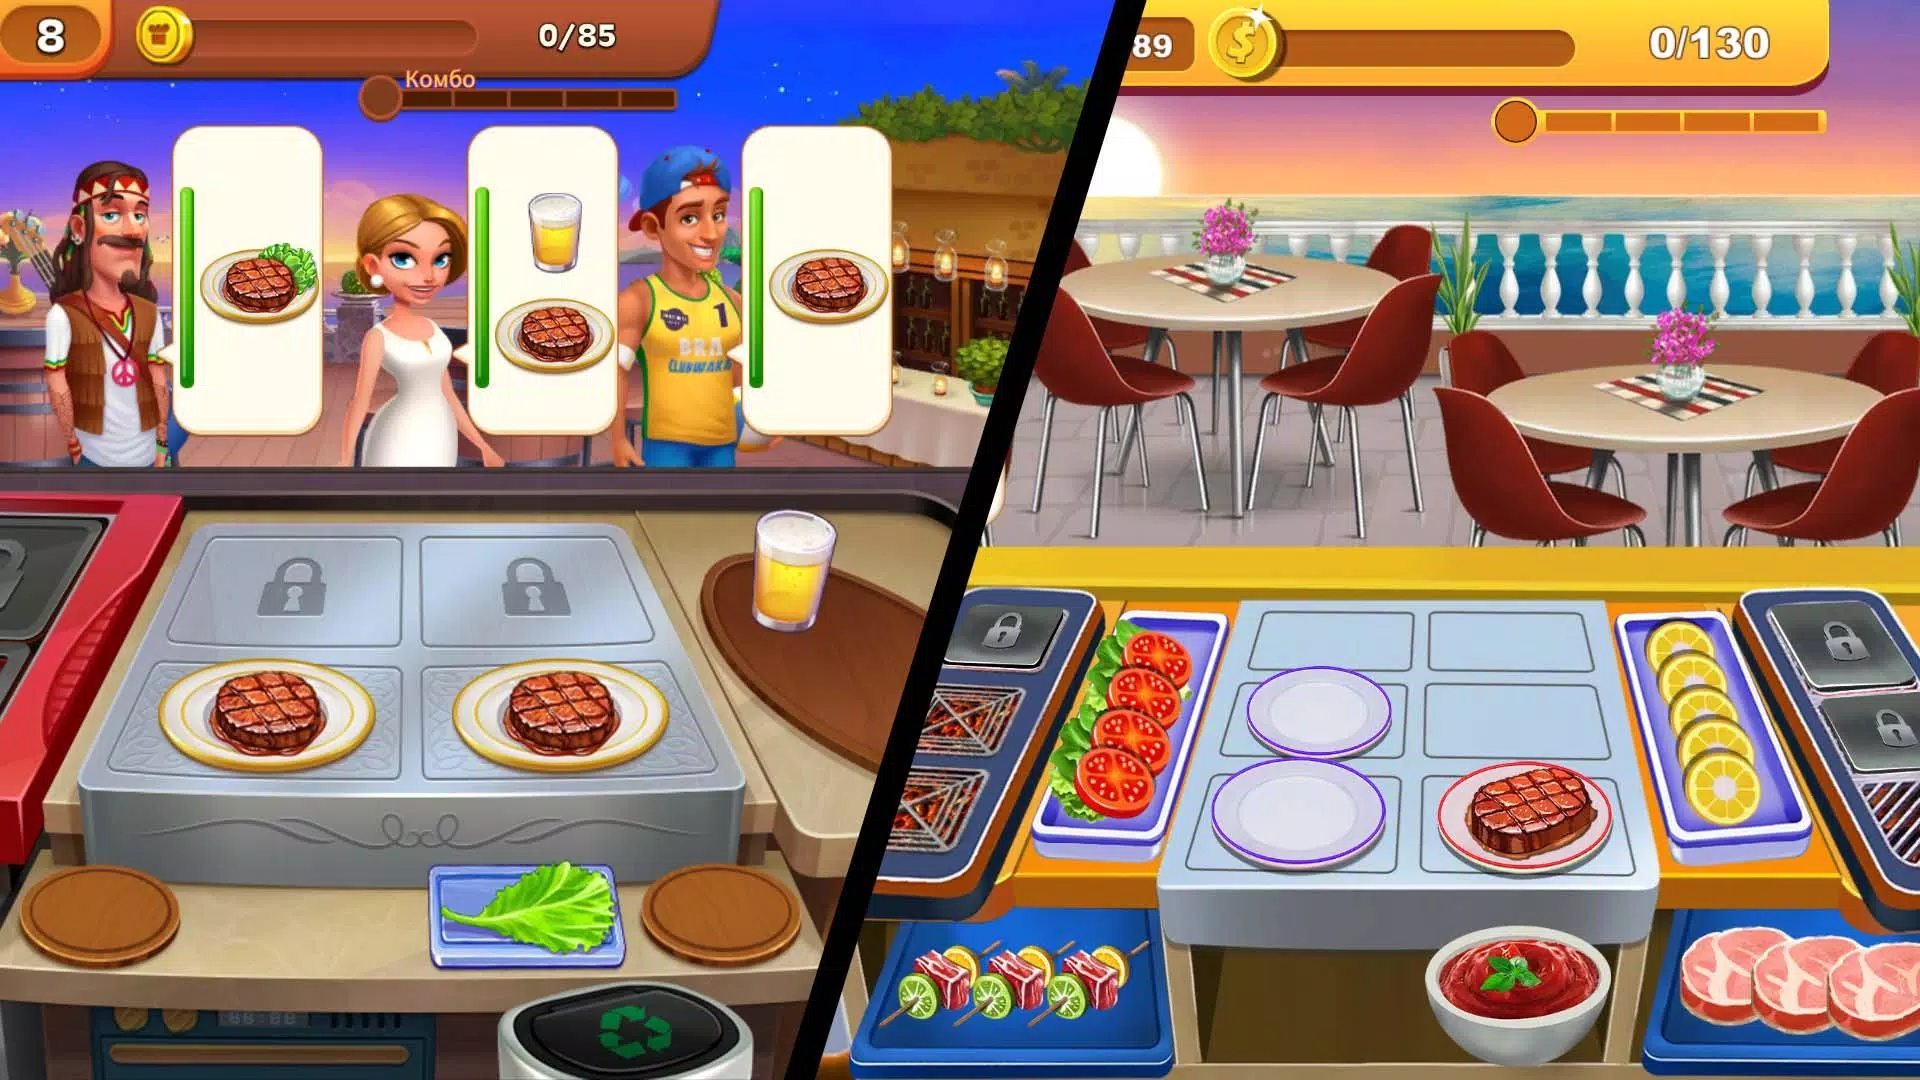 Pode rodar o jogo Cooking Simulator?